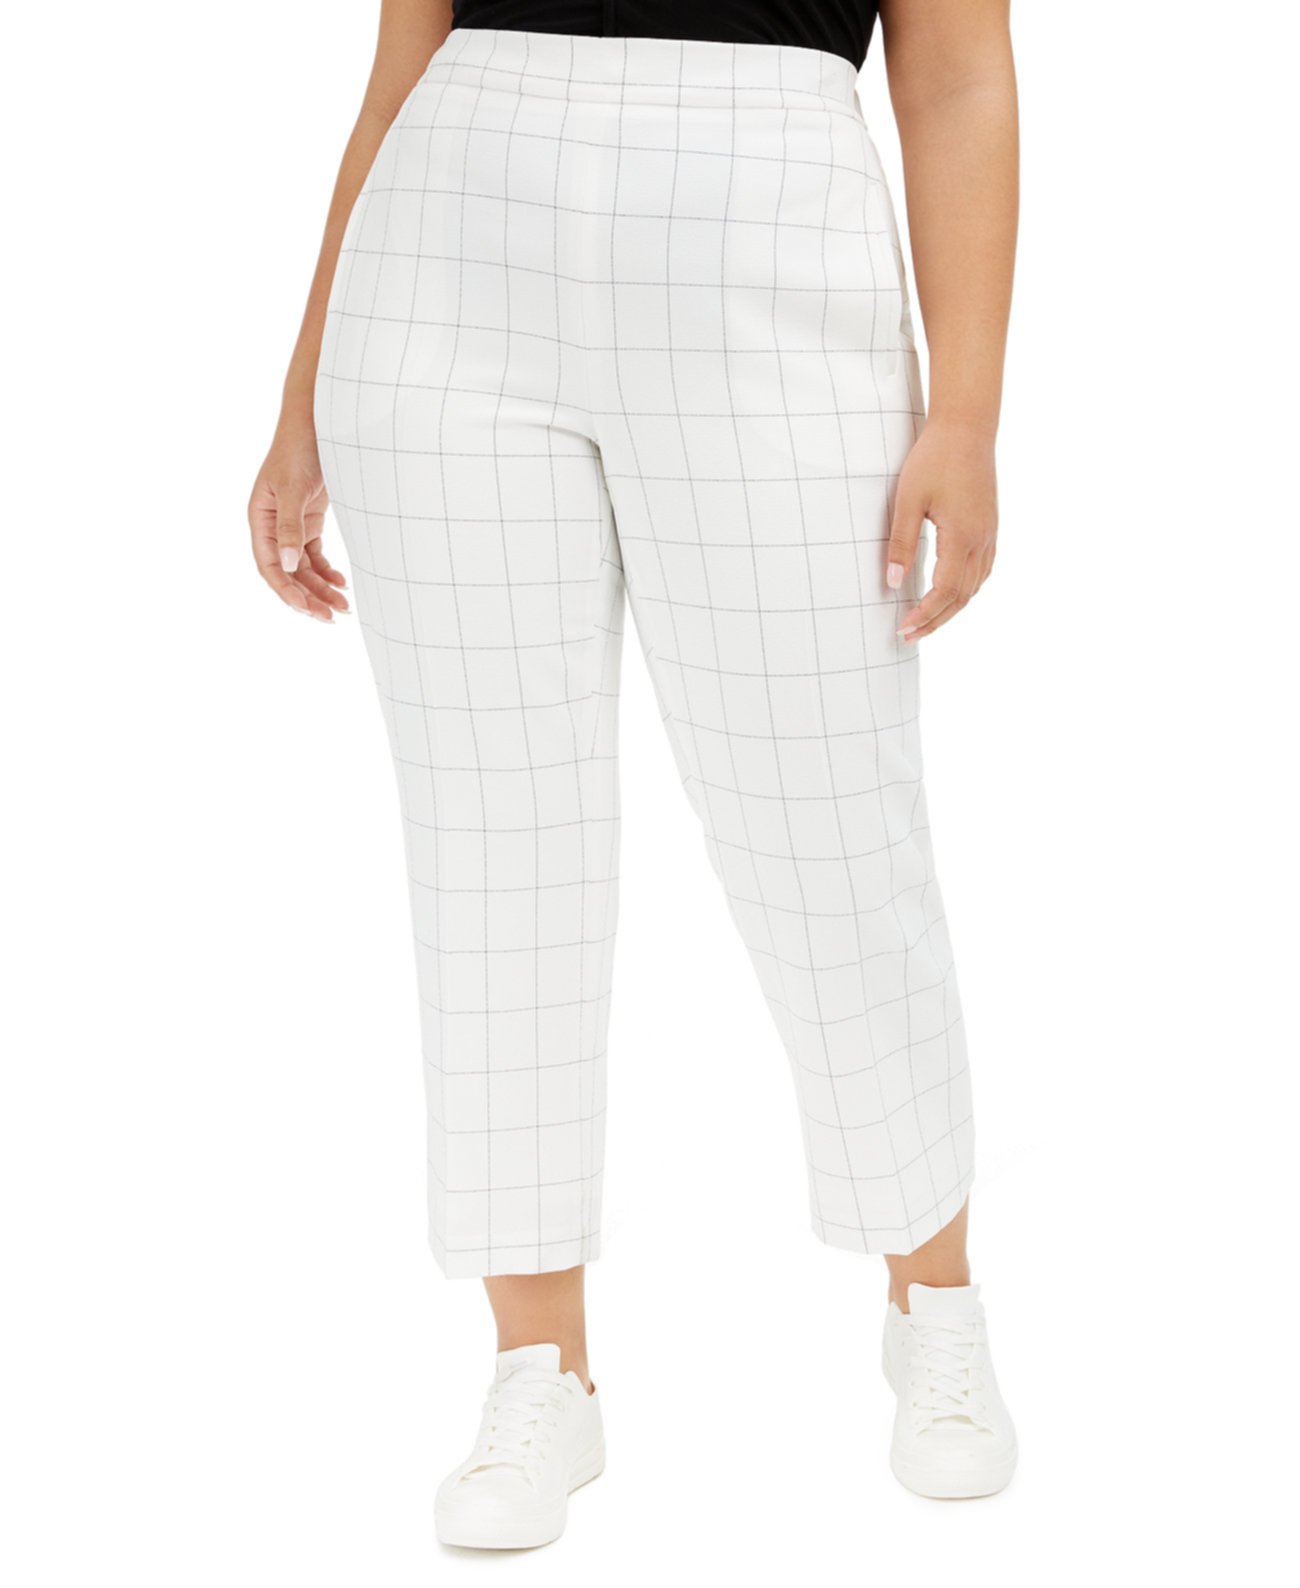 Модные штаны с принтом в виде окон, созданные для Macy's Bar III